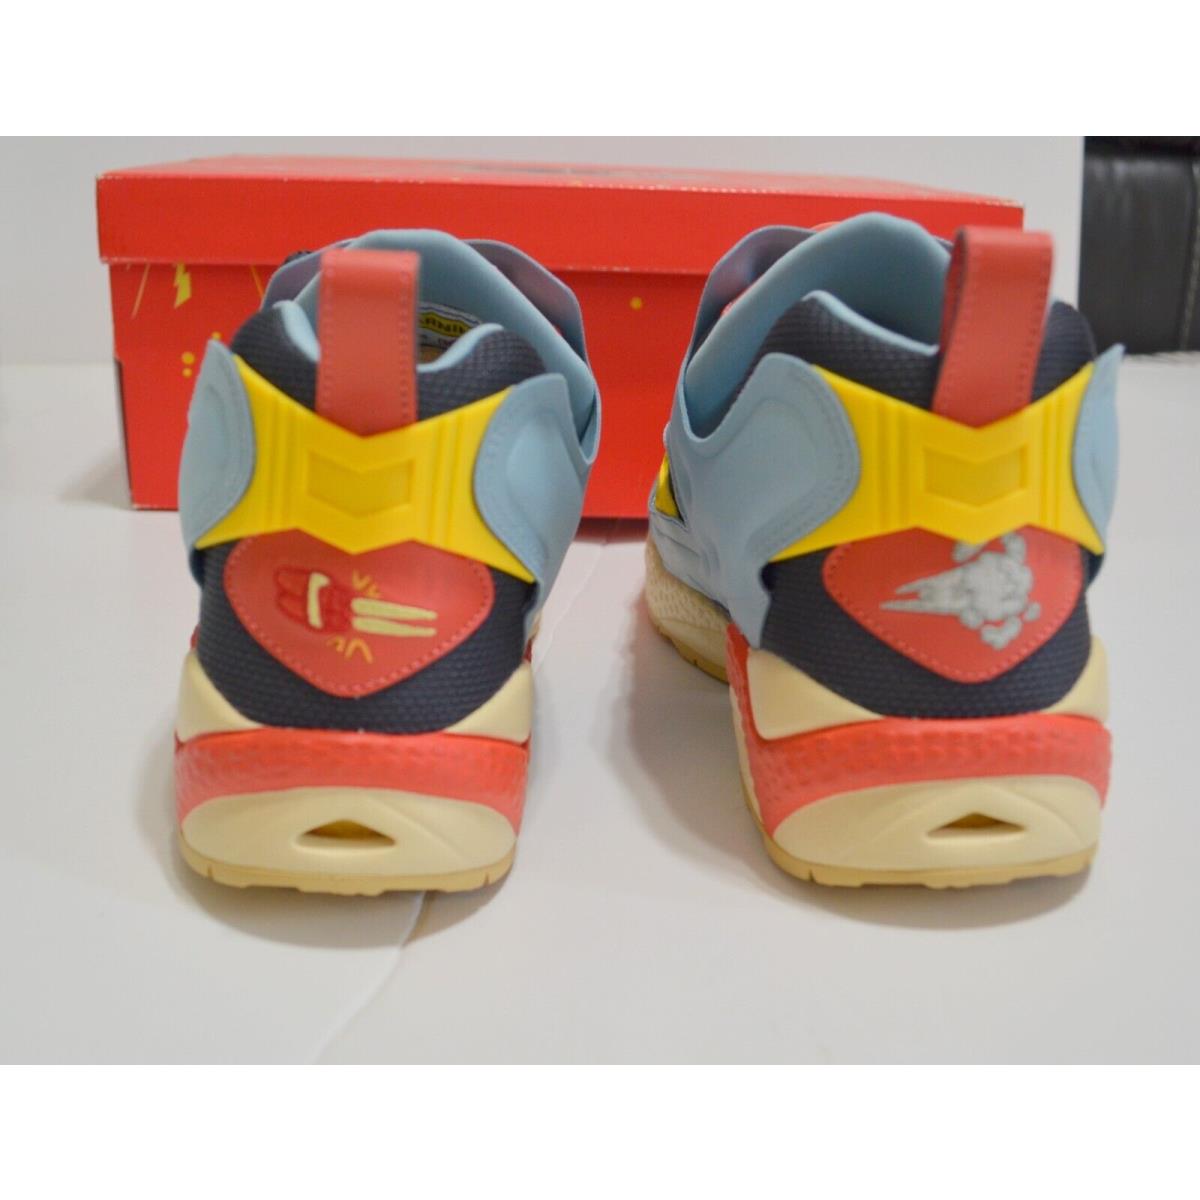 Reebok shoes Instapump Fury - Multicolor 4